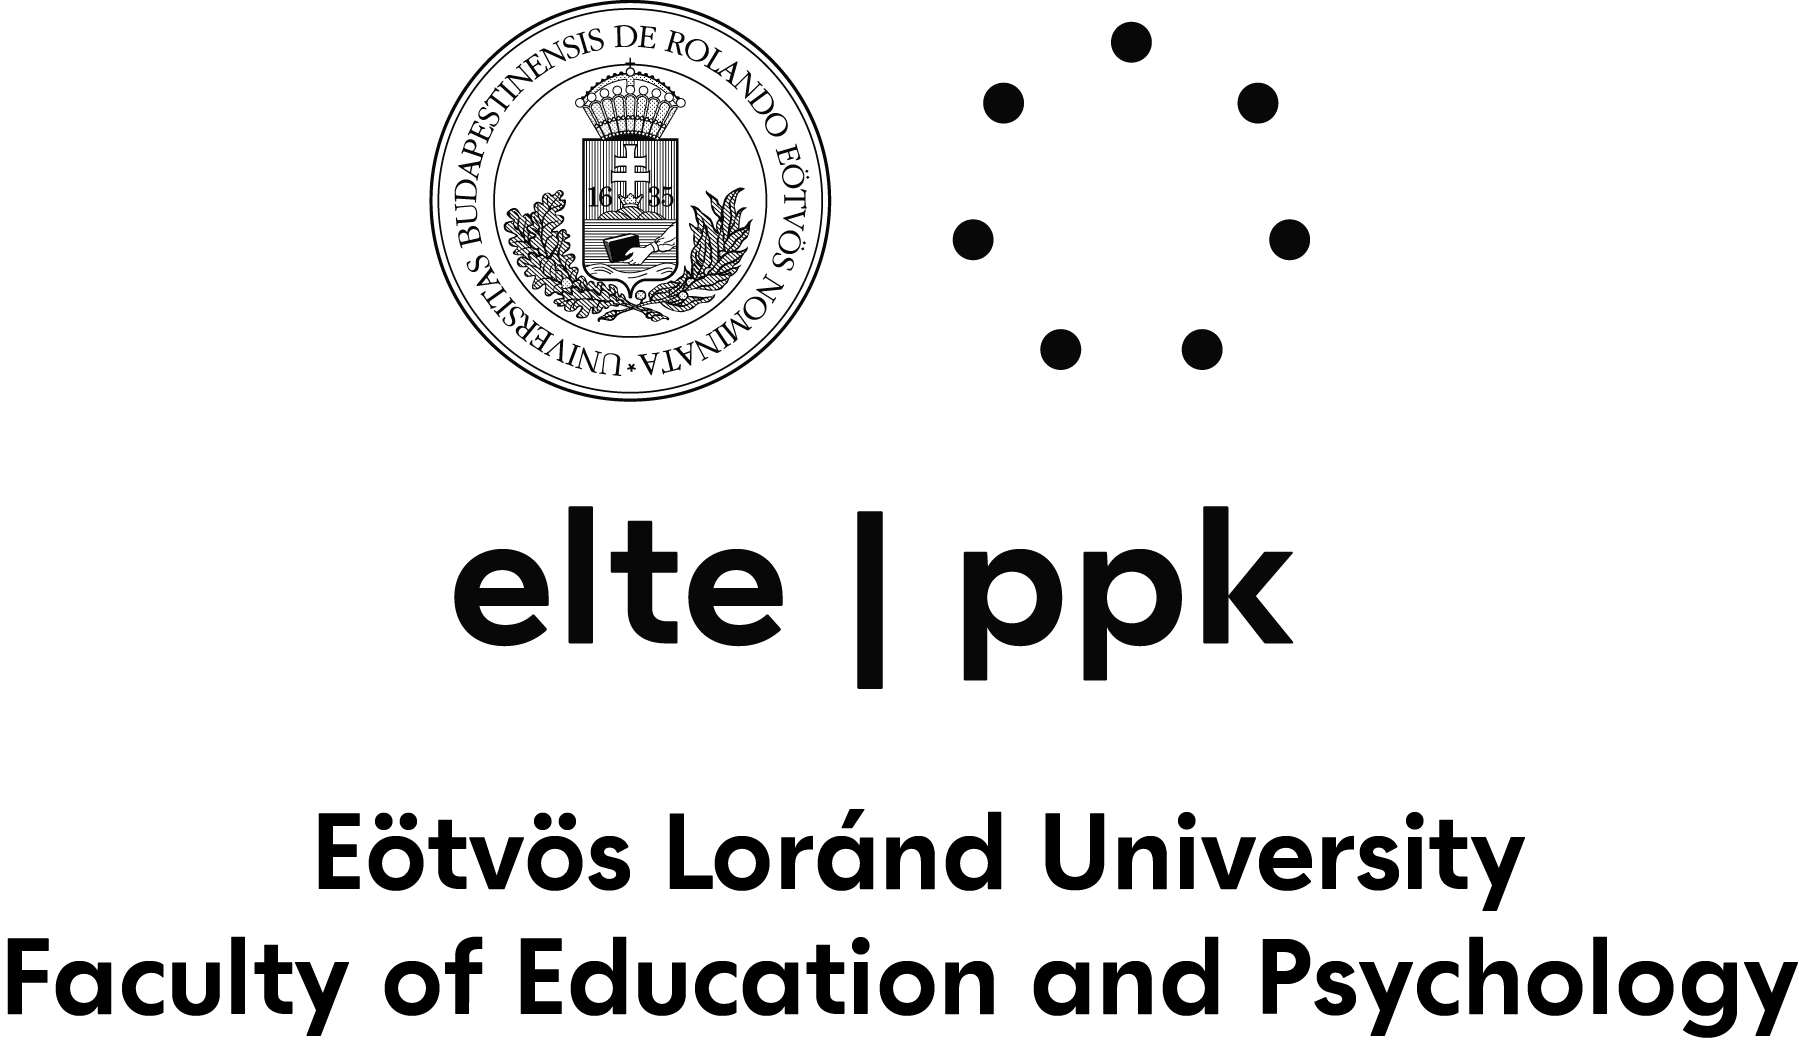 ELTE|PPK